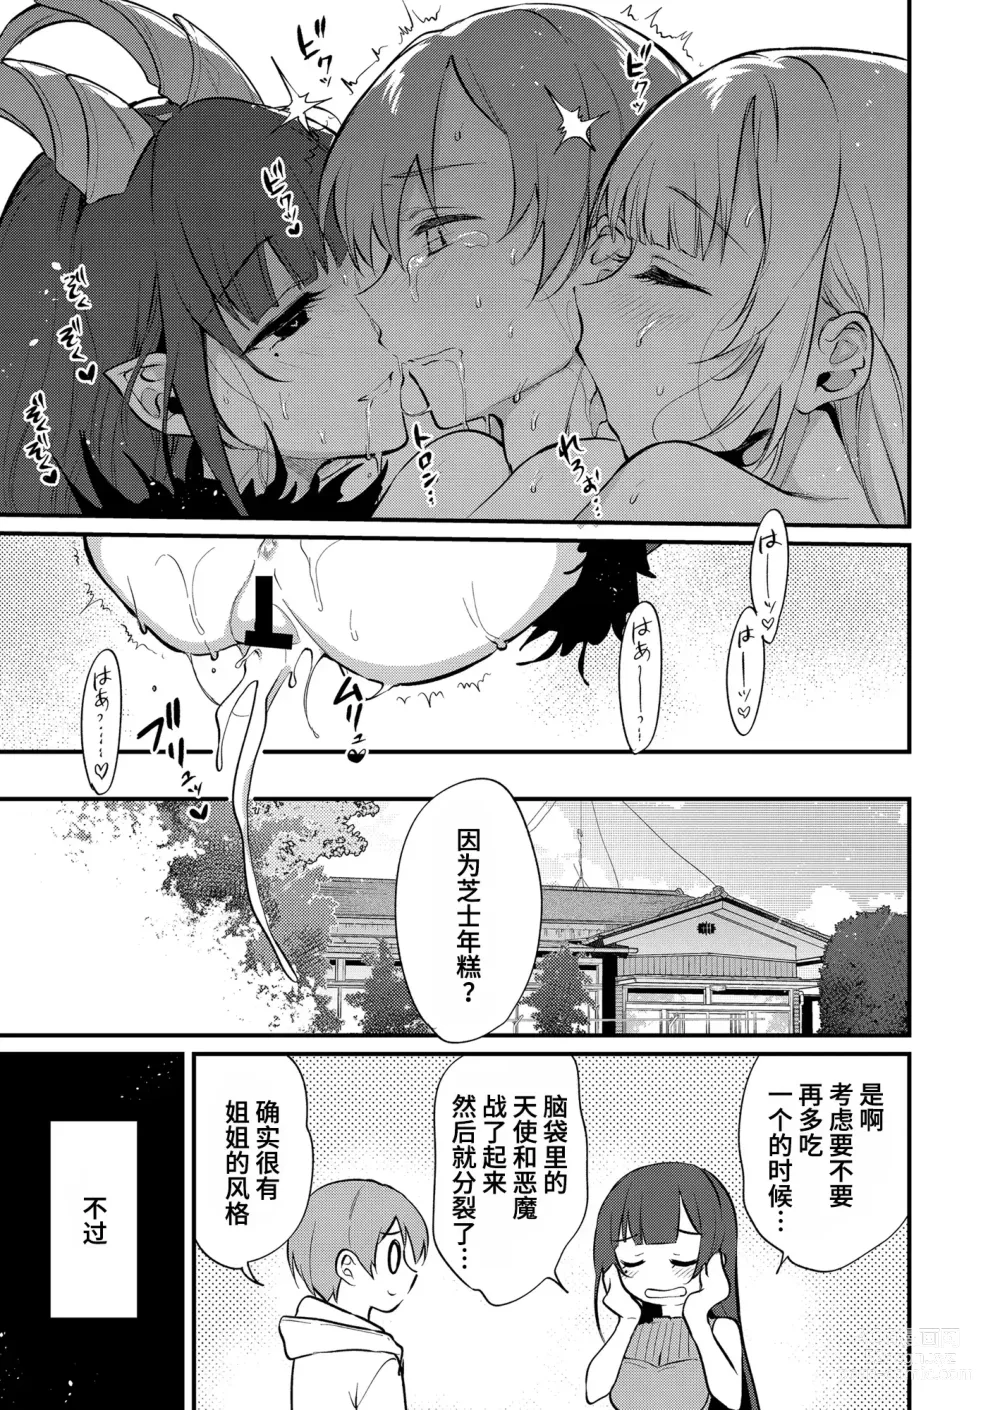 Page 329 of doujinshi Ane Naru Mono 1-11